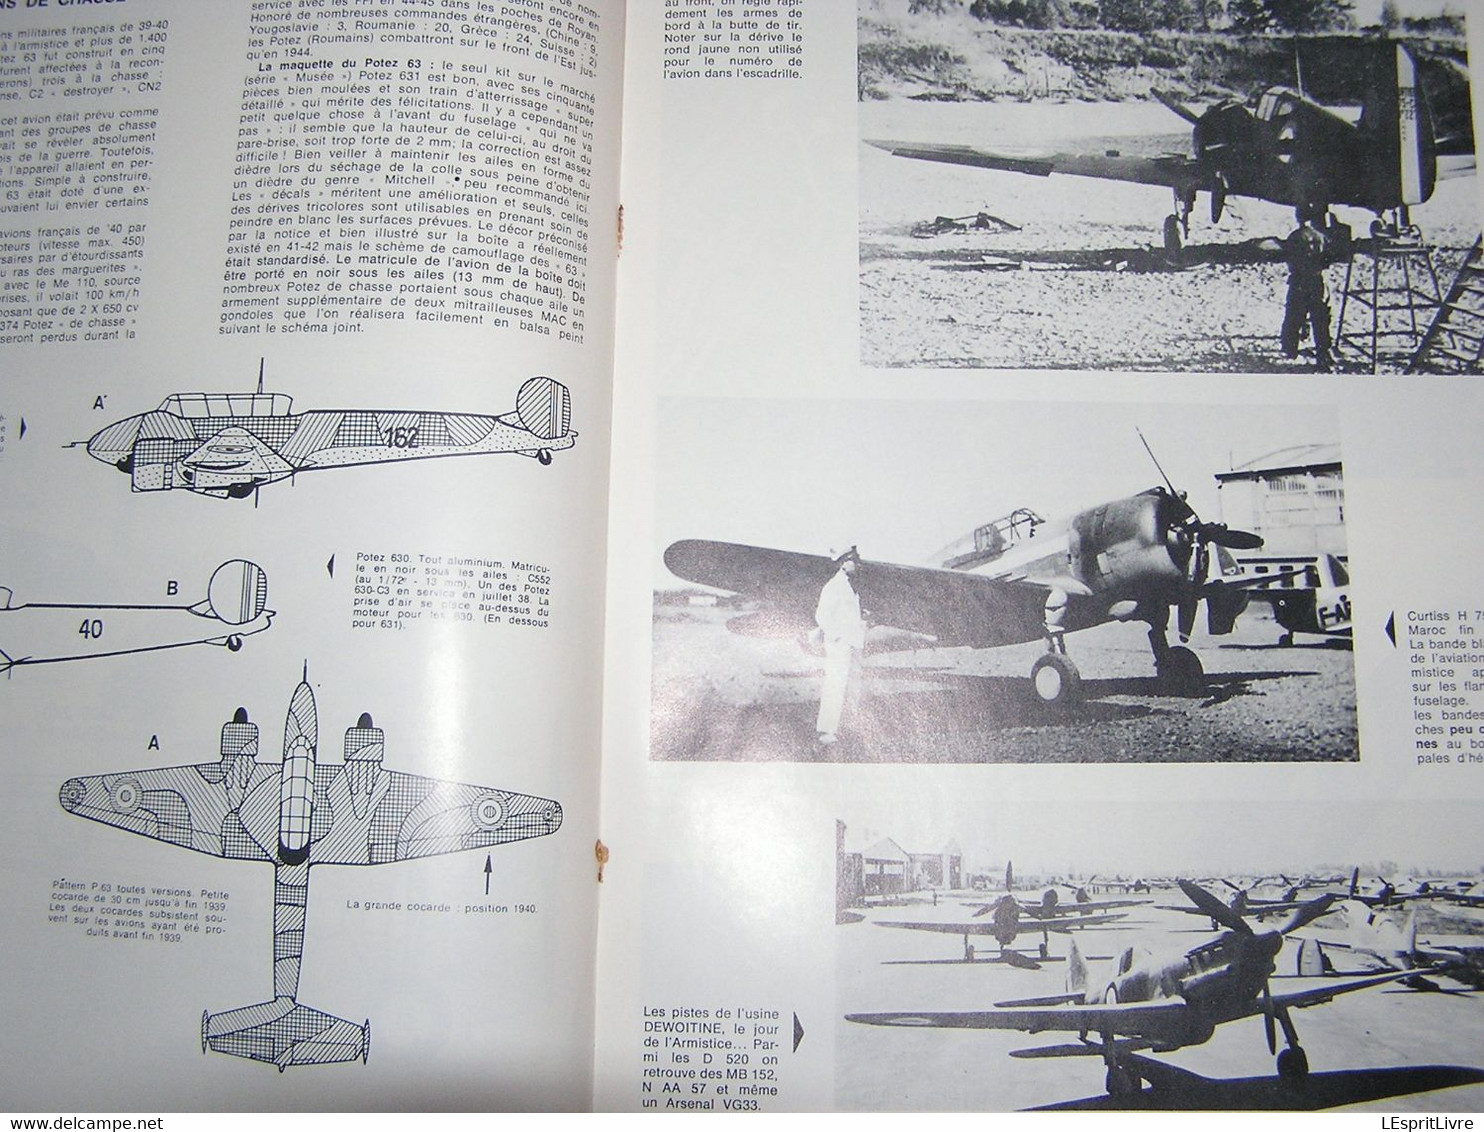 LES MORDUS DU MODELISME N° 1 L'Aviation Française 1939 40 Guerre 40 45 Maquette Avion Camouflage Marques Marking Morane - Modellismo